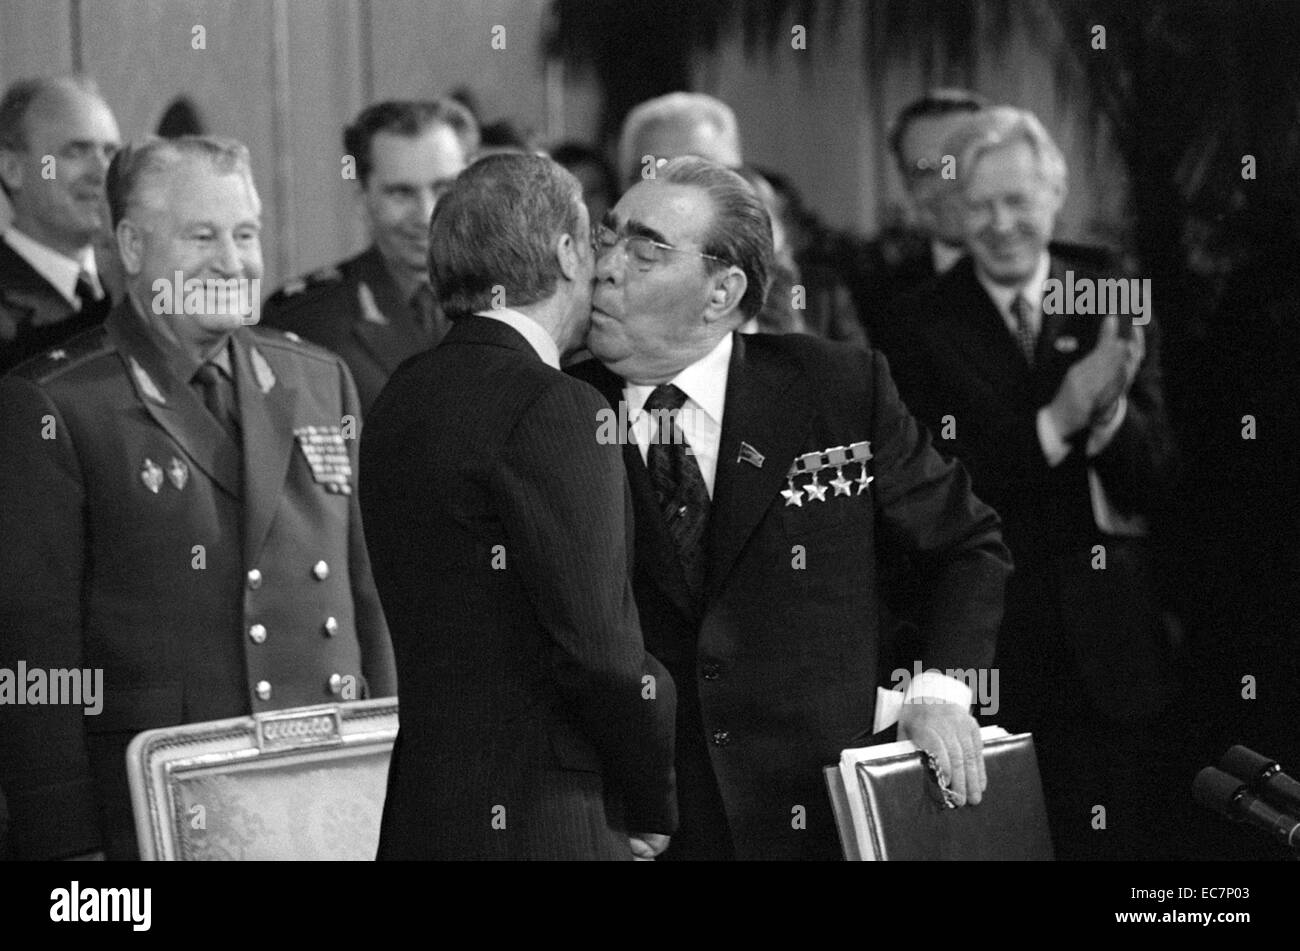 Fotografia del leader sovietico Leonid Brezhnev (1906-1982) baciando la guancia del Presidente degli Stati Uniti Jimmy Carter (1924 - ). Datata 1979 Foto Stock